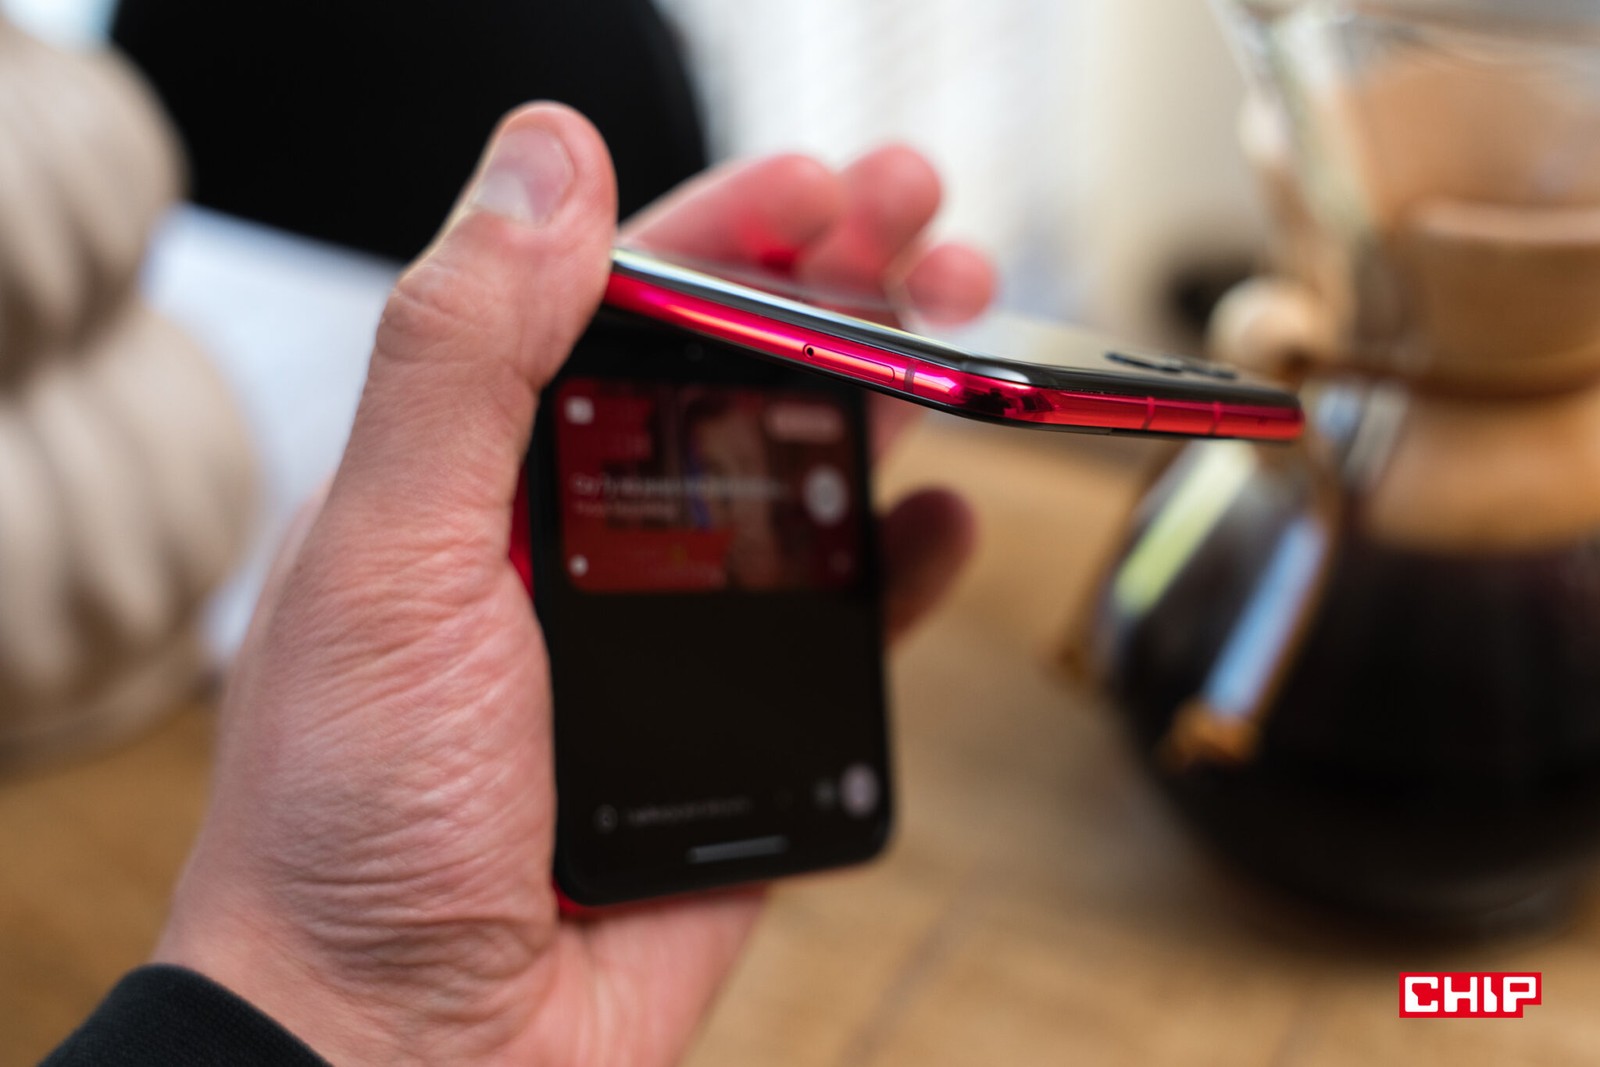 Xiaomi szykuje składany smartfon z klapką. Najwyższa pora dogonić konkurencję